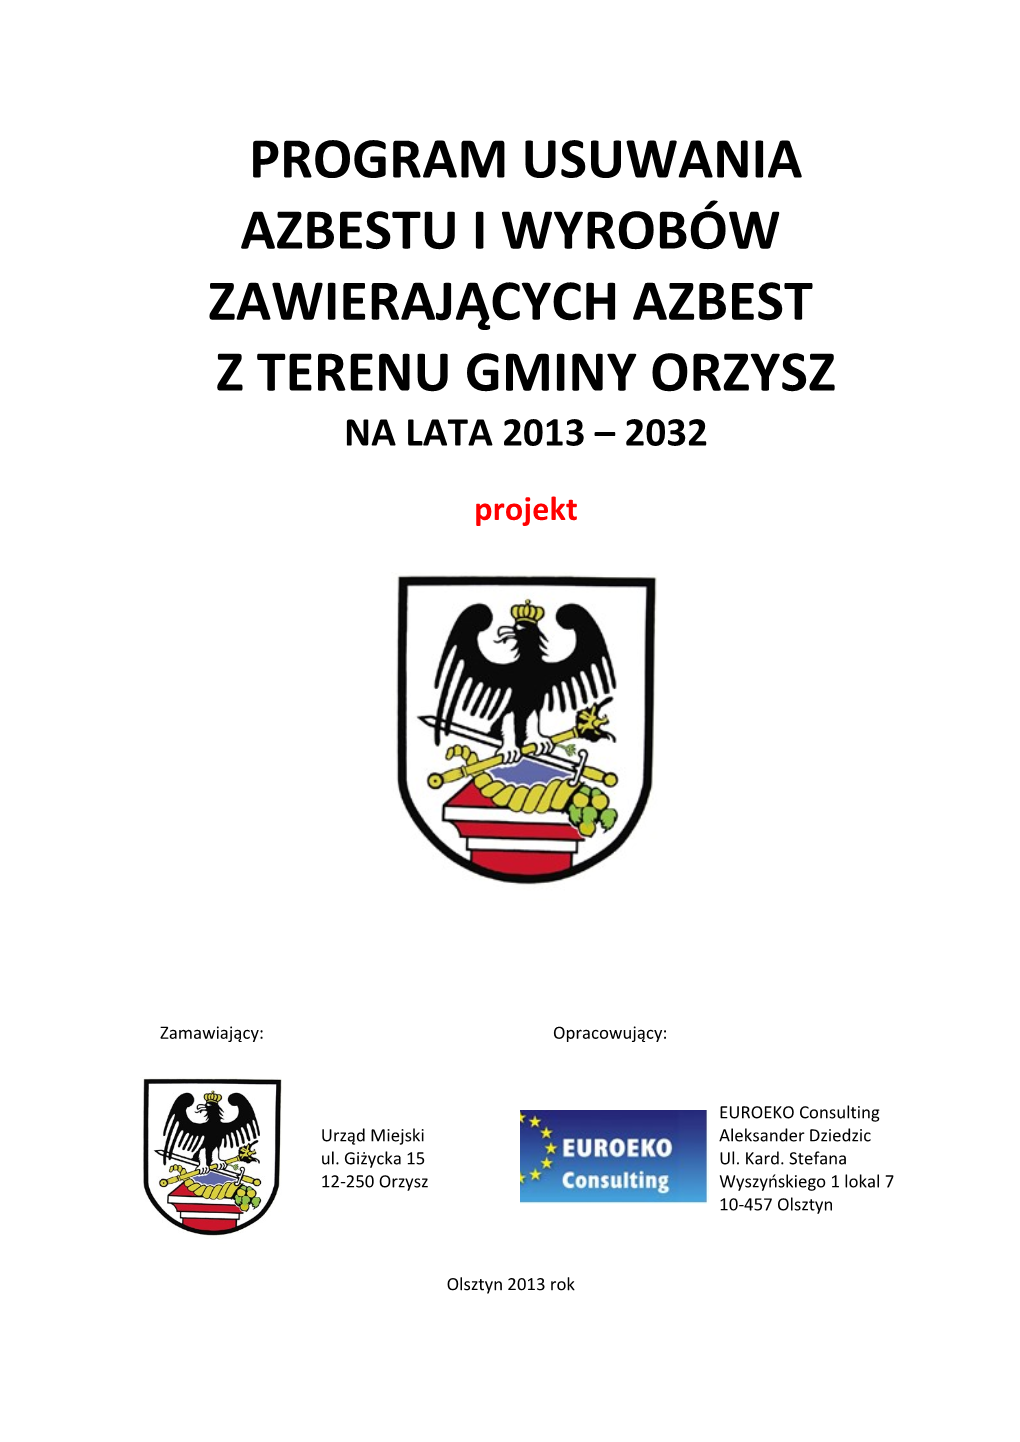 Program Usuwania Azbestu I Wyrobów Zawierających Azbest Z Terenu Gminy Orzysz Na Lata 2013 – 2032